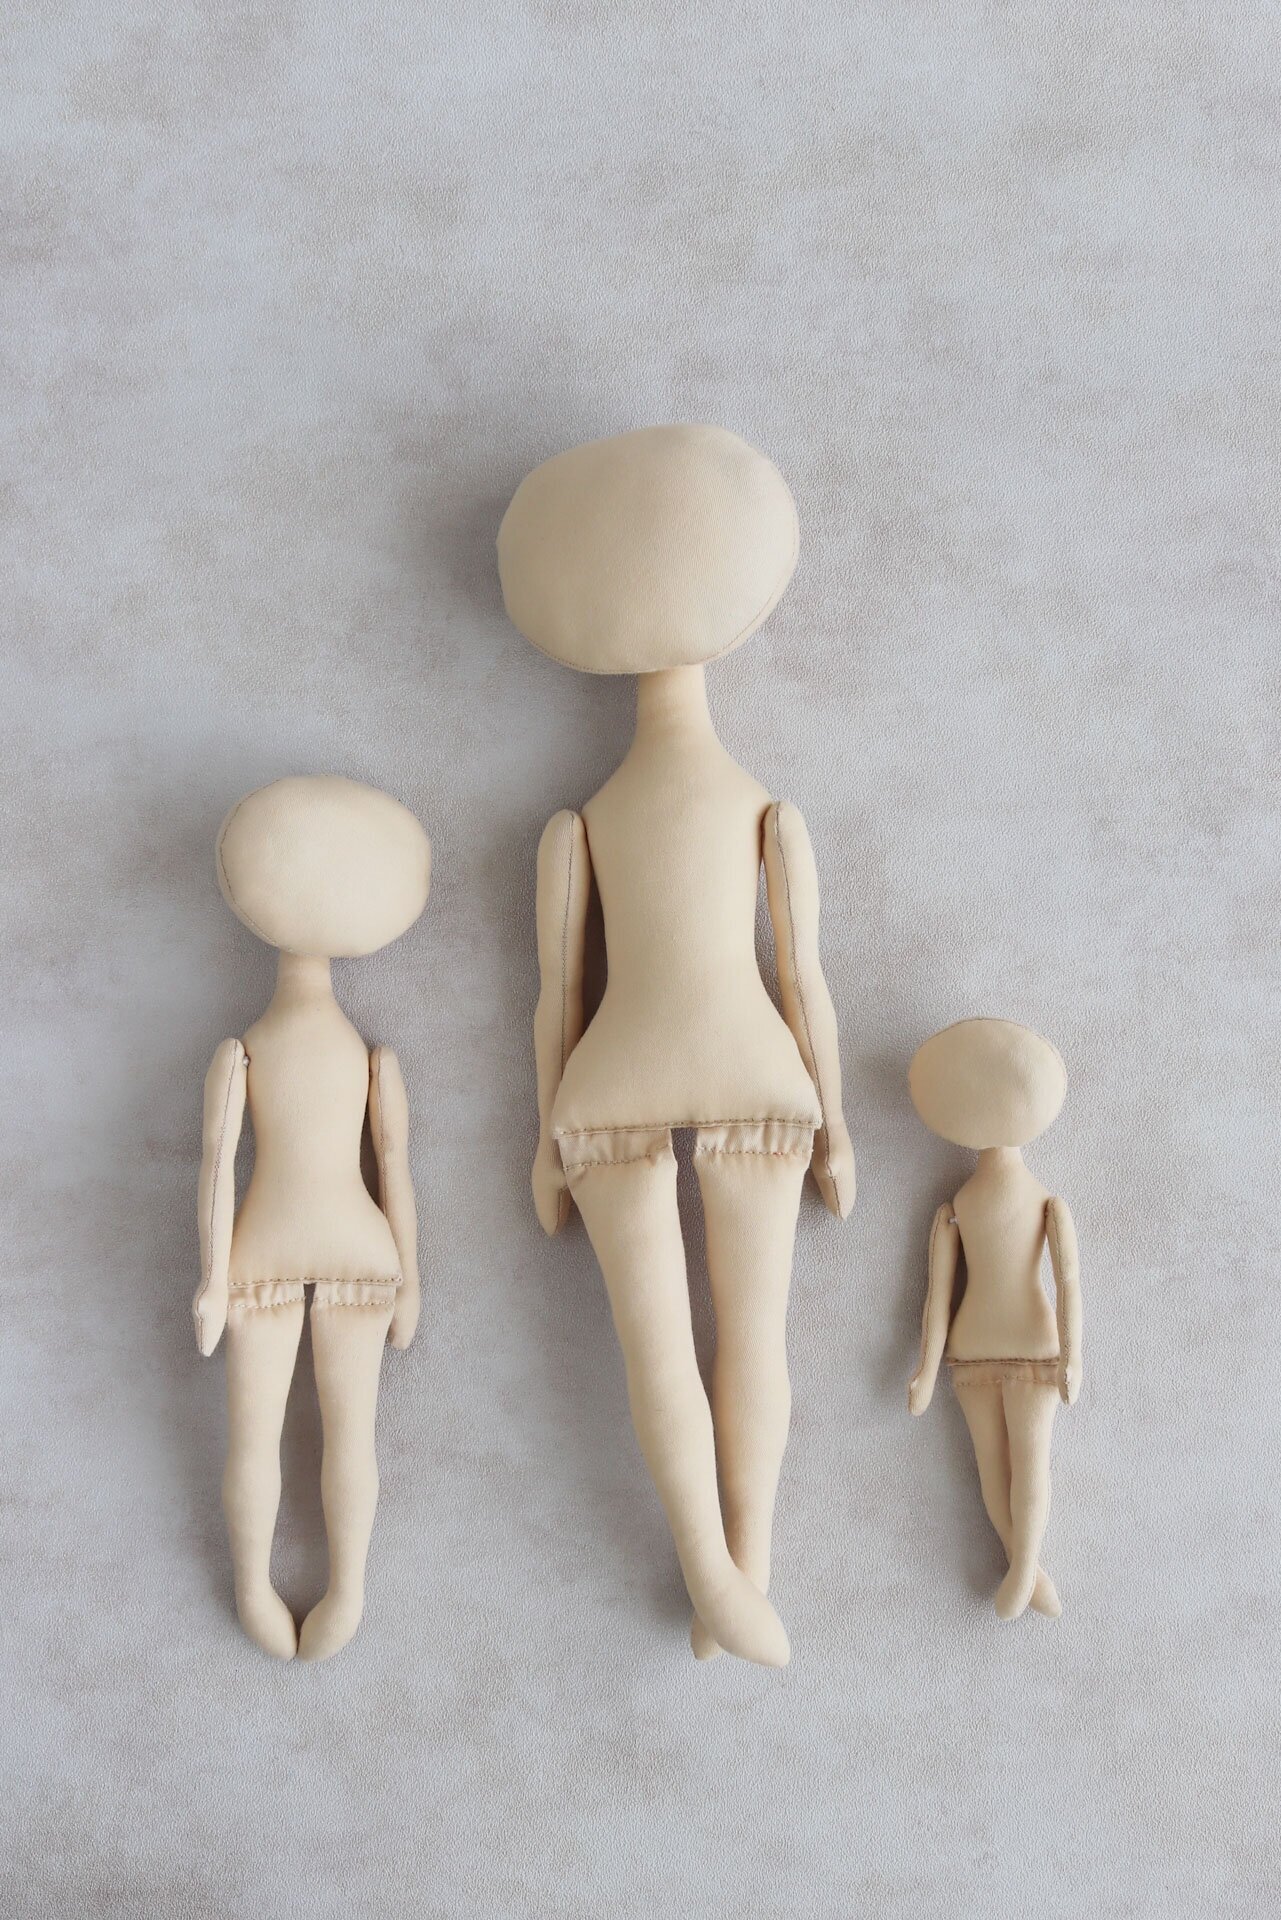 Ася, 36 см. Заготовка интерьерной куклы из текстиля для хобби, рукоделия, творчества